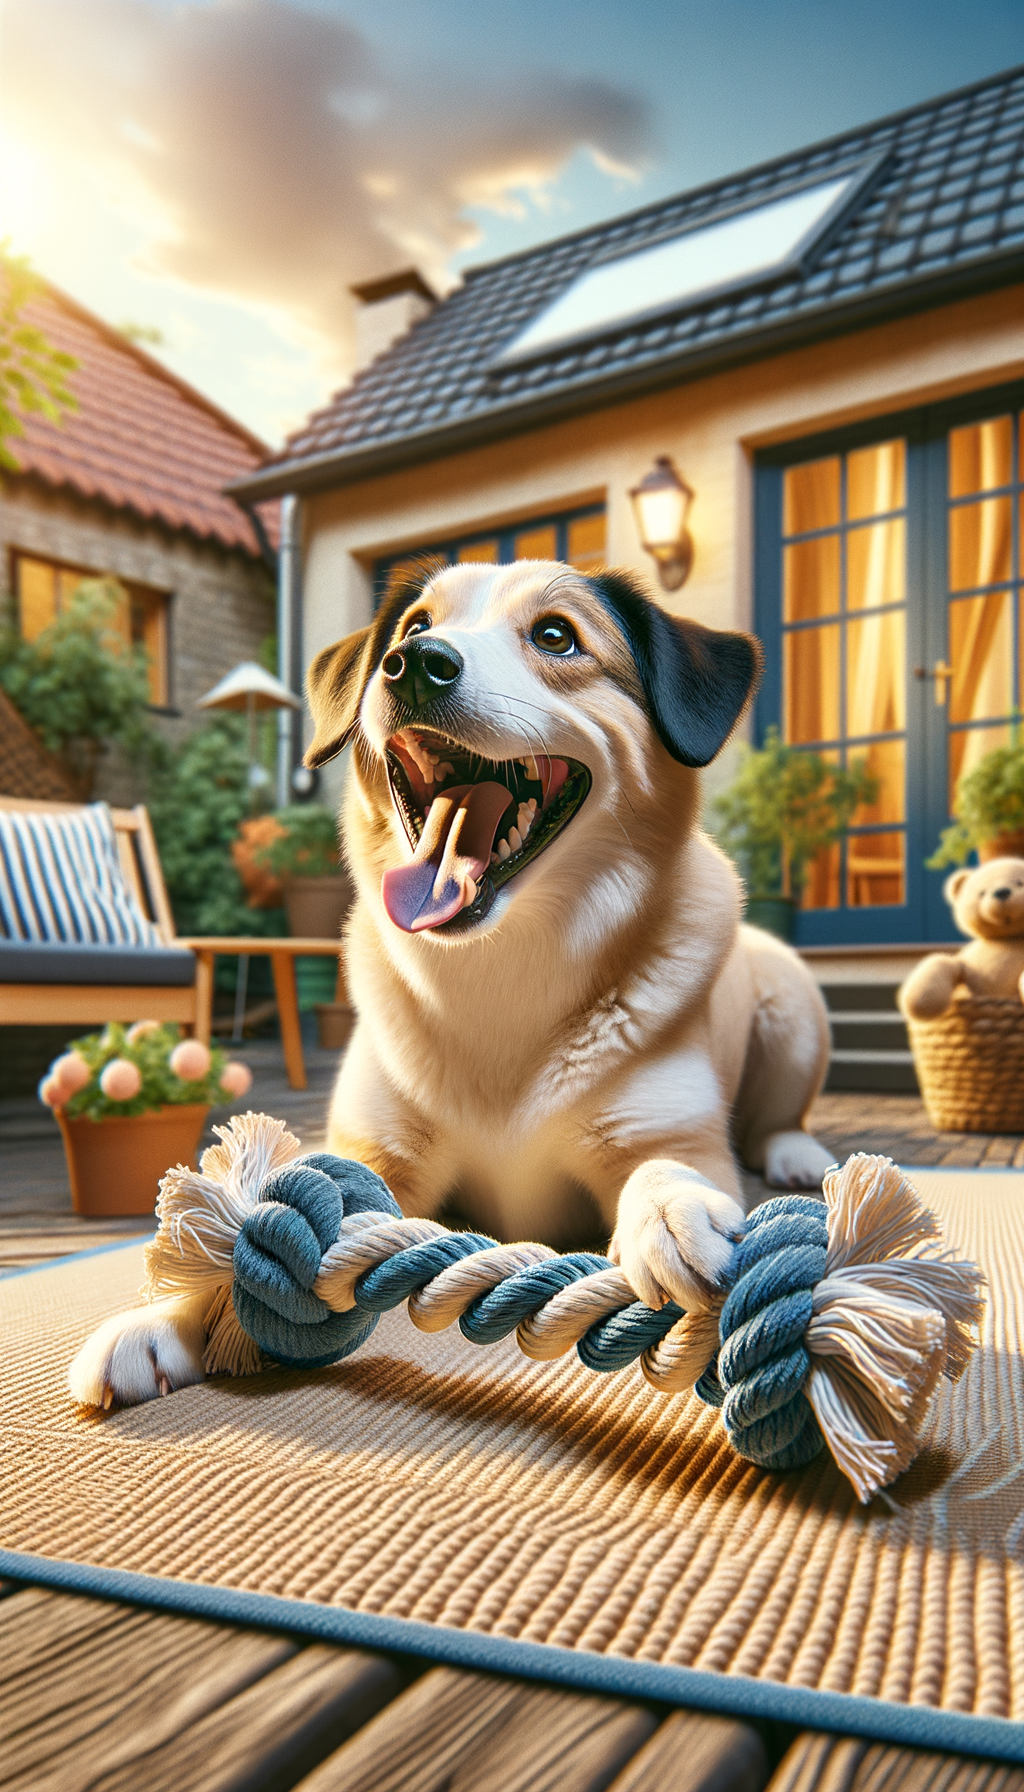 Создать фотореалистичное изображение канатной игрушки для собак, где в кадре присутствует собака, играющая с канатиком на фоне уютного двора, подчеркивающее радость и активность животного.